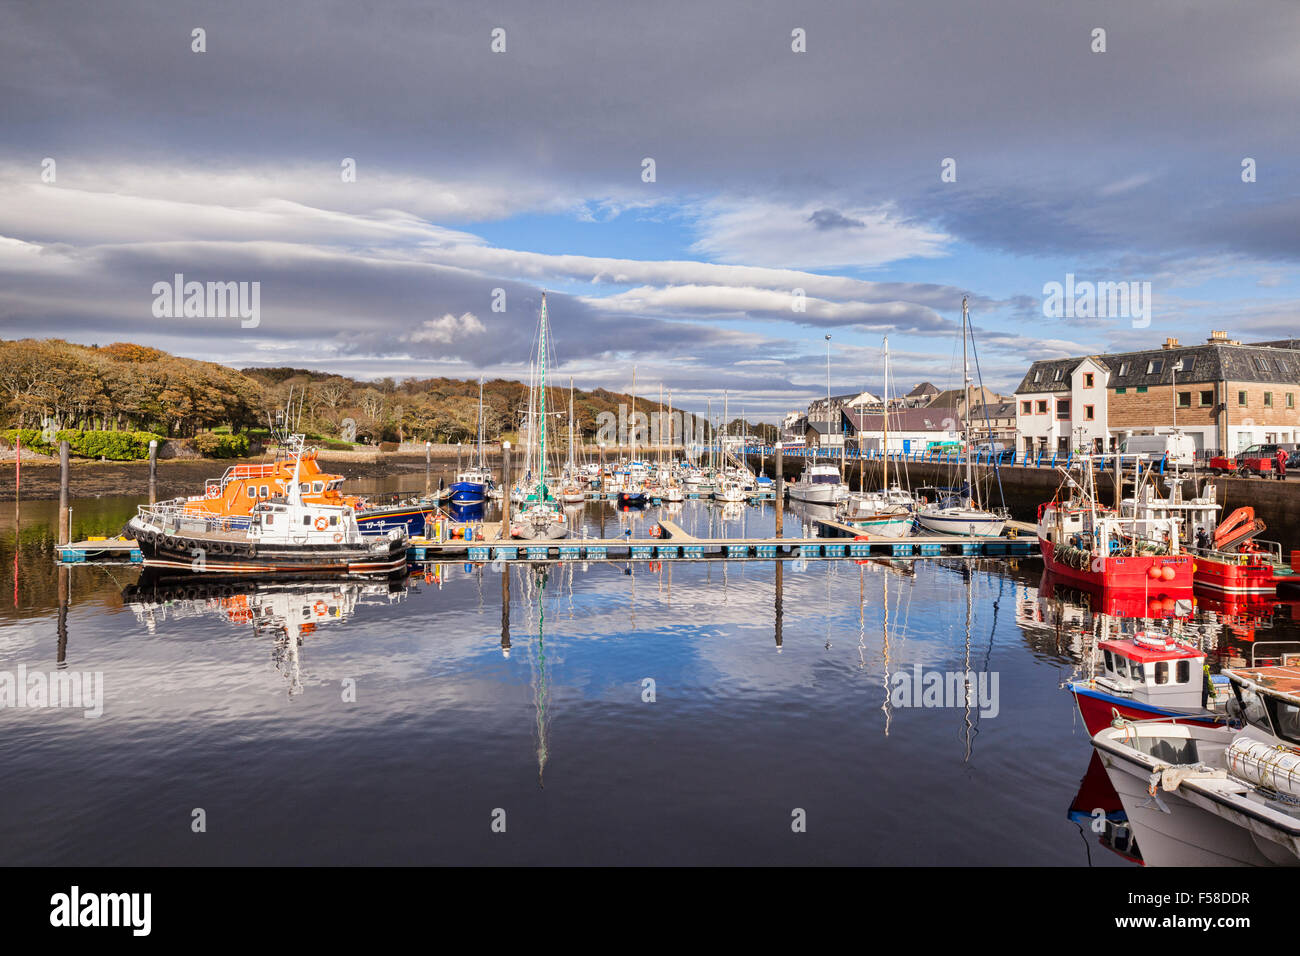 Stornoway Harbour, Isle of Lewis, Outer Hebrides, Scottish Highlands, Scotland, UK Stock Photo